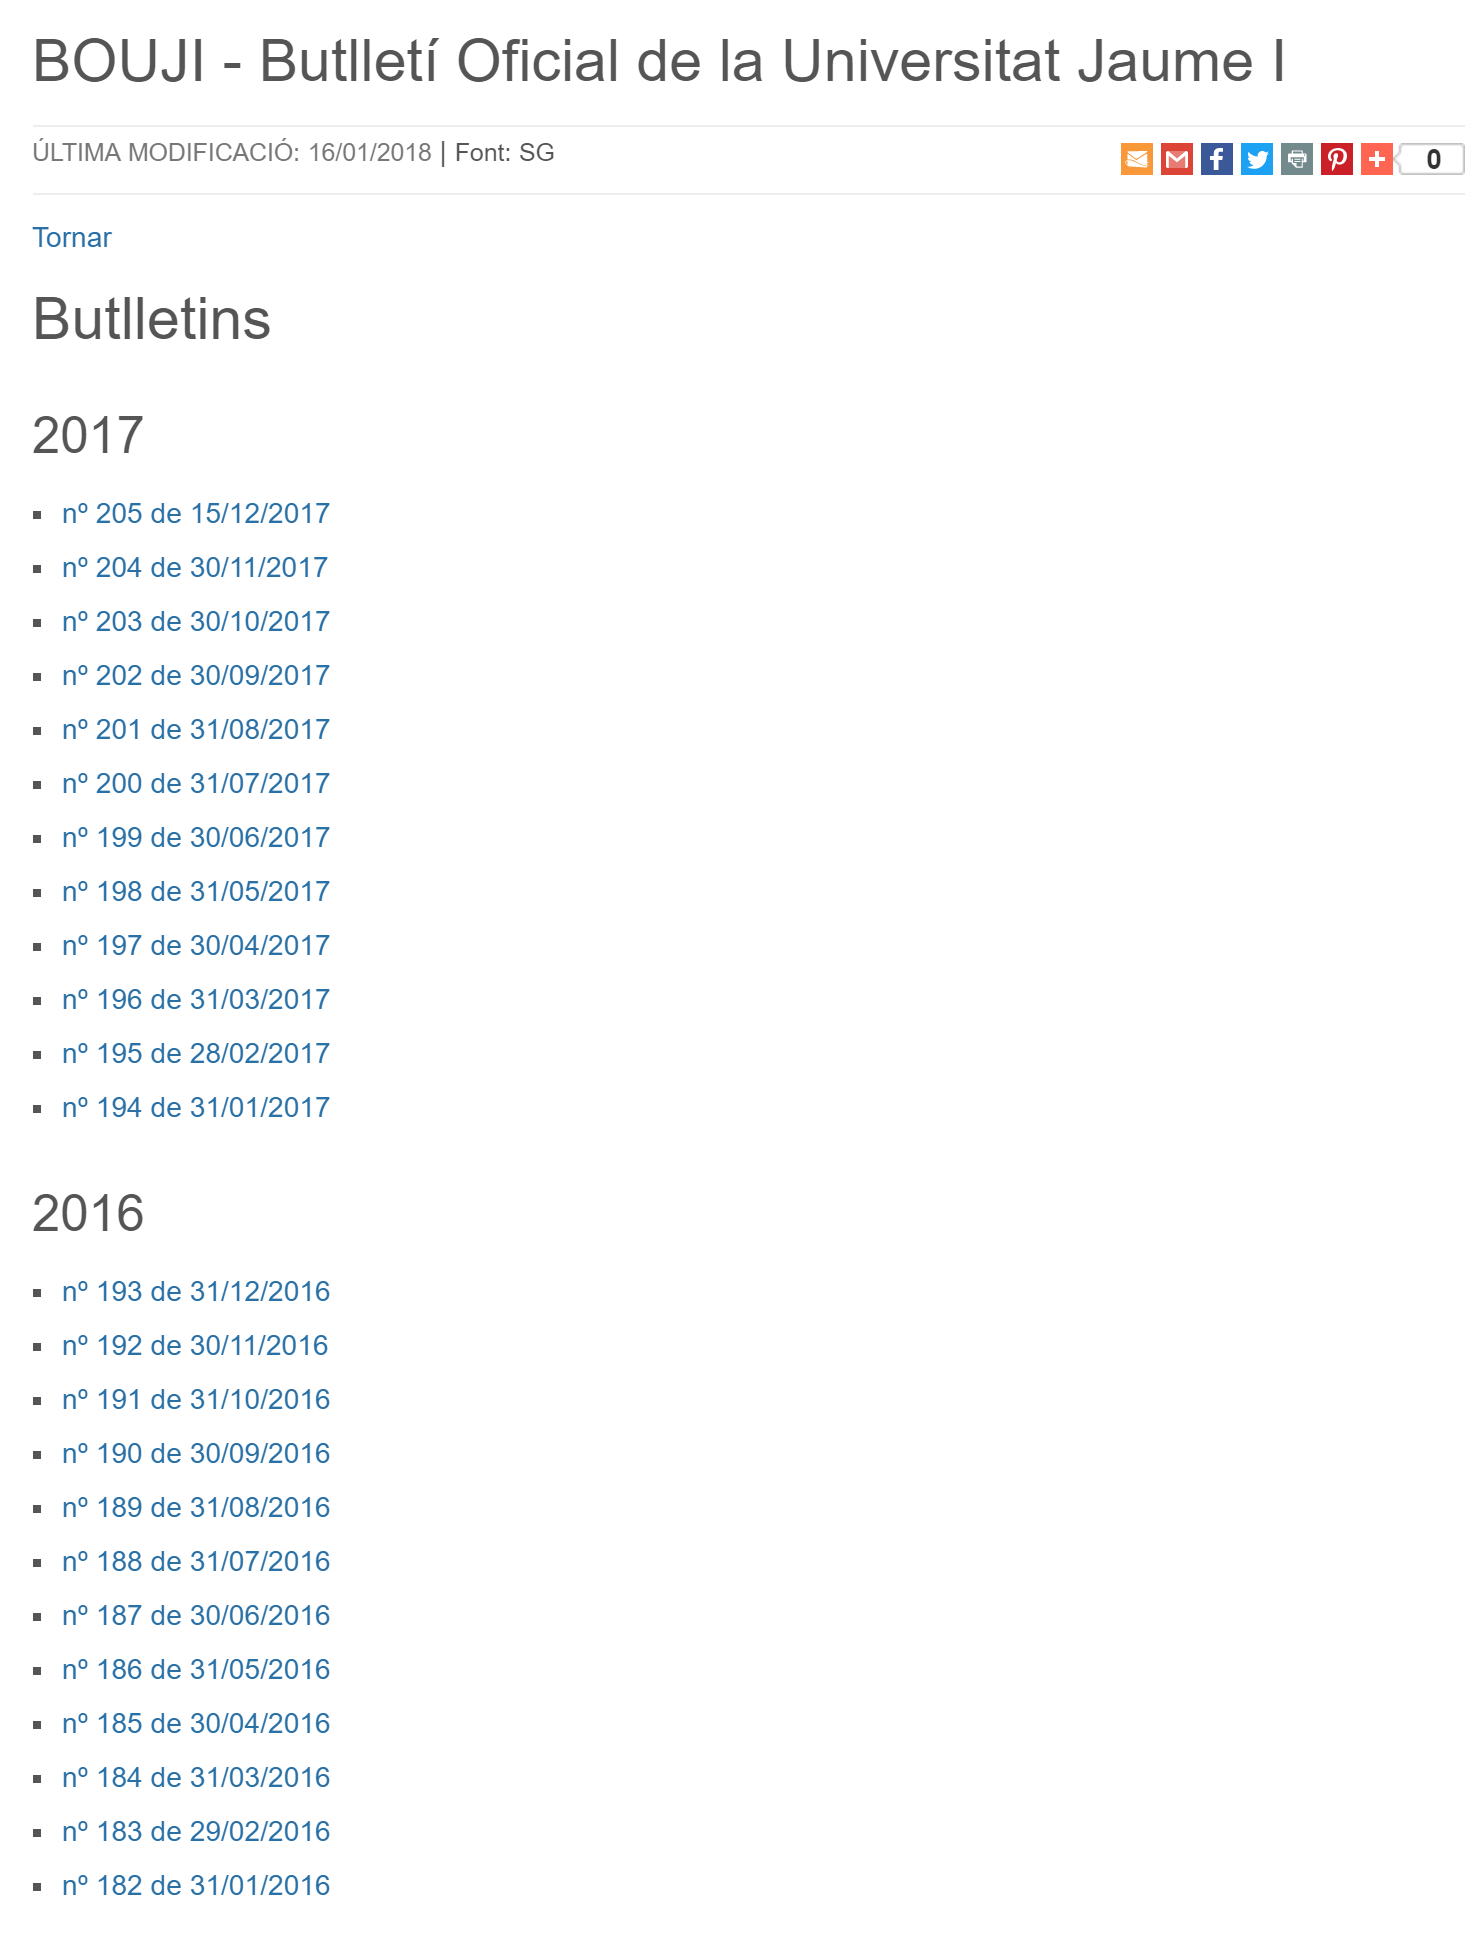 Visualització de tots els butlletins agrupats per anys